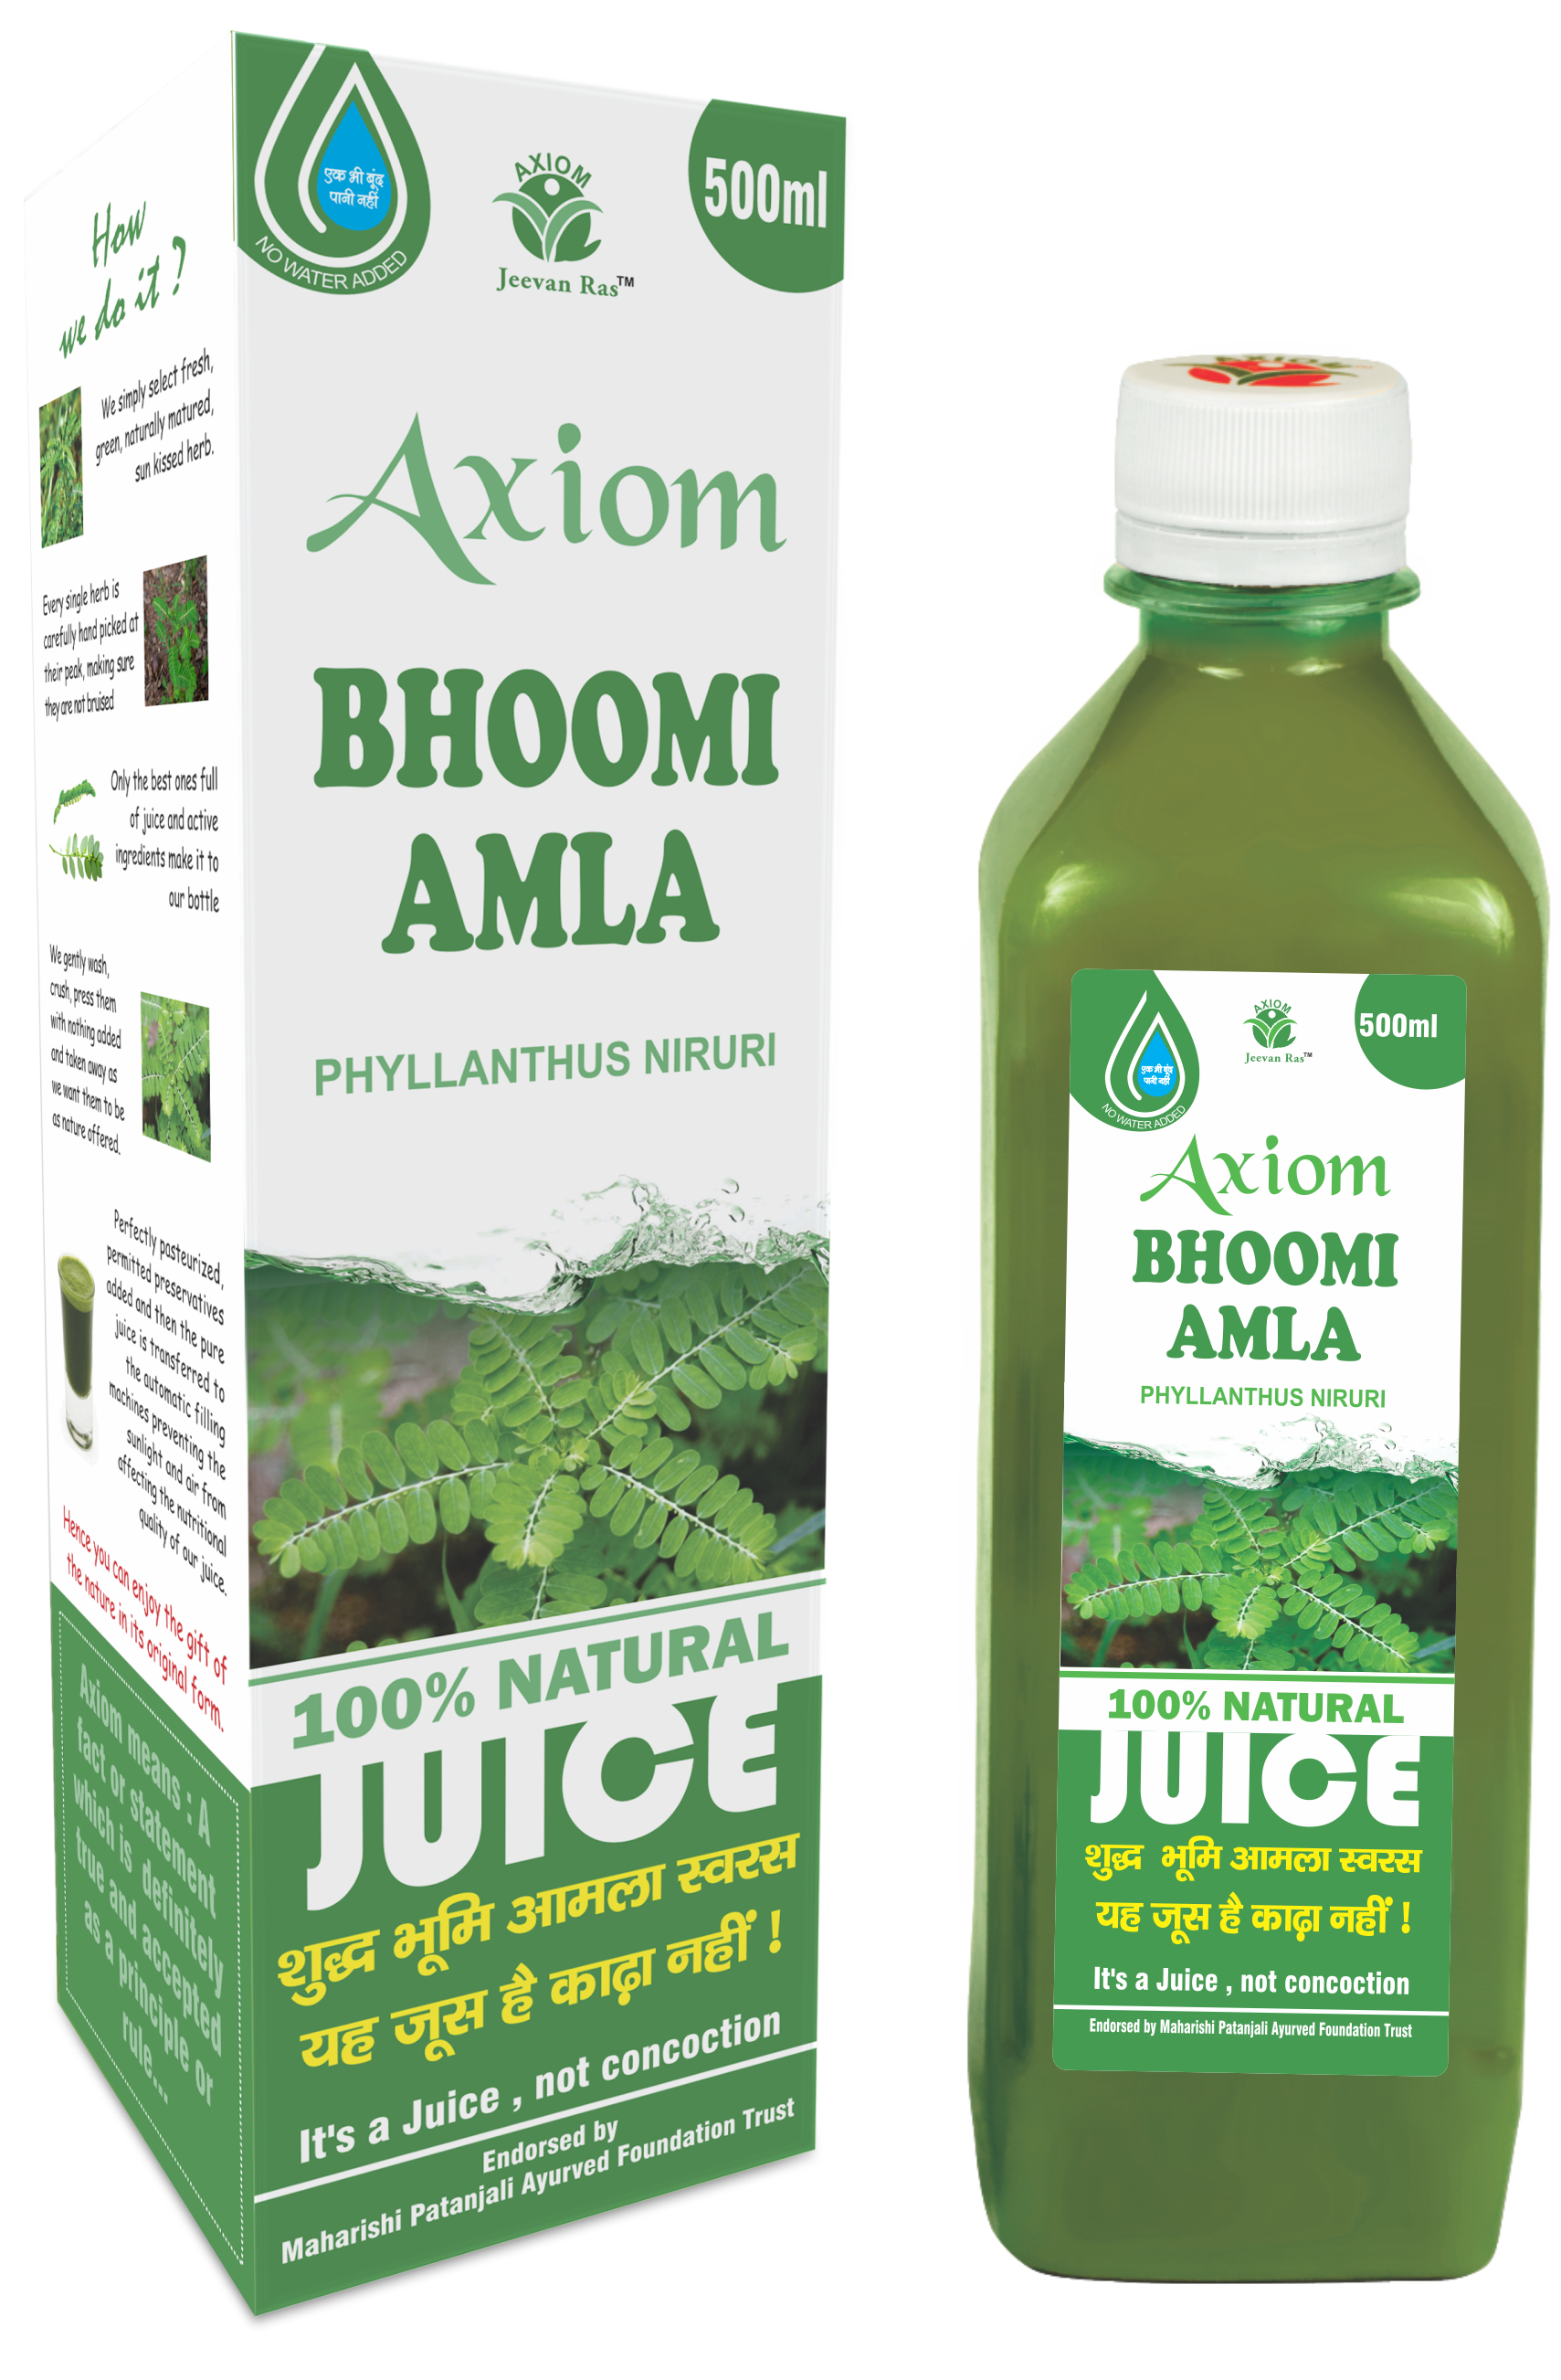 Buy Axiom Bhoomi Amla Juice at Best Price Online